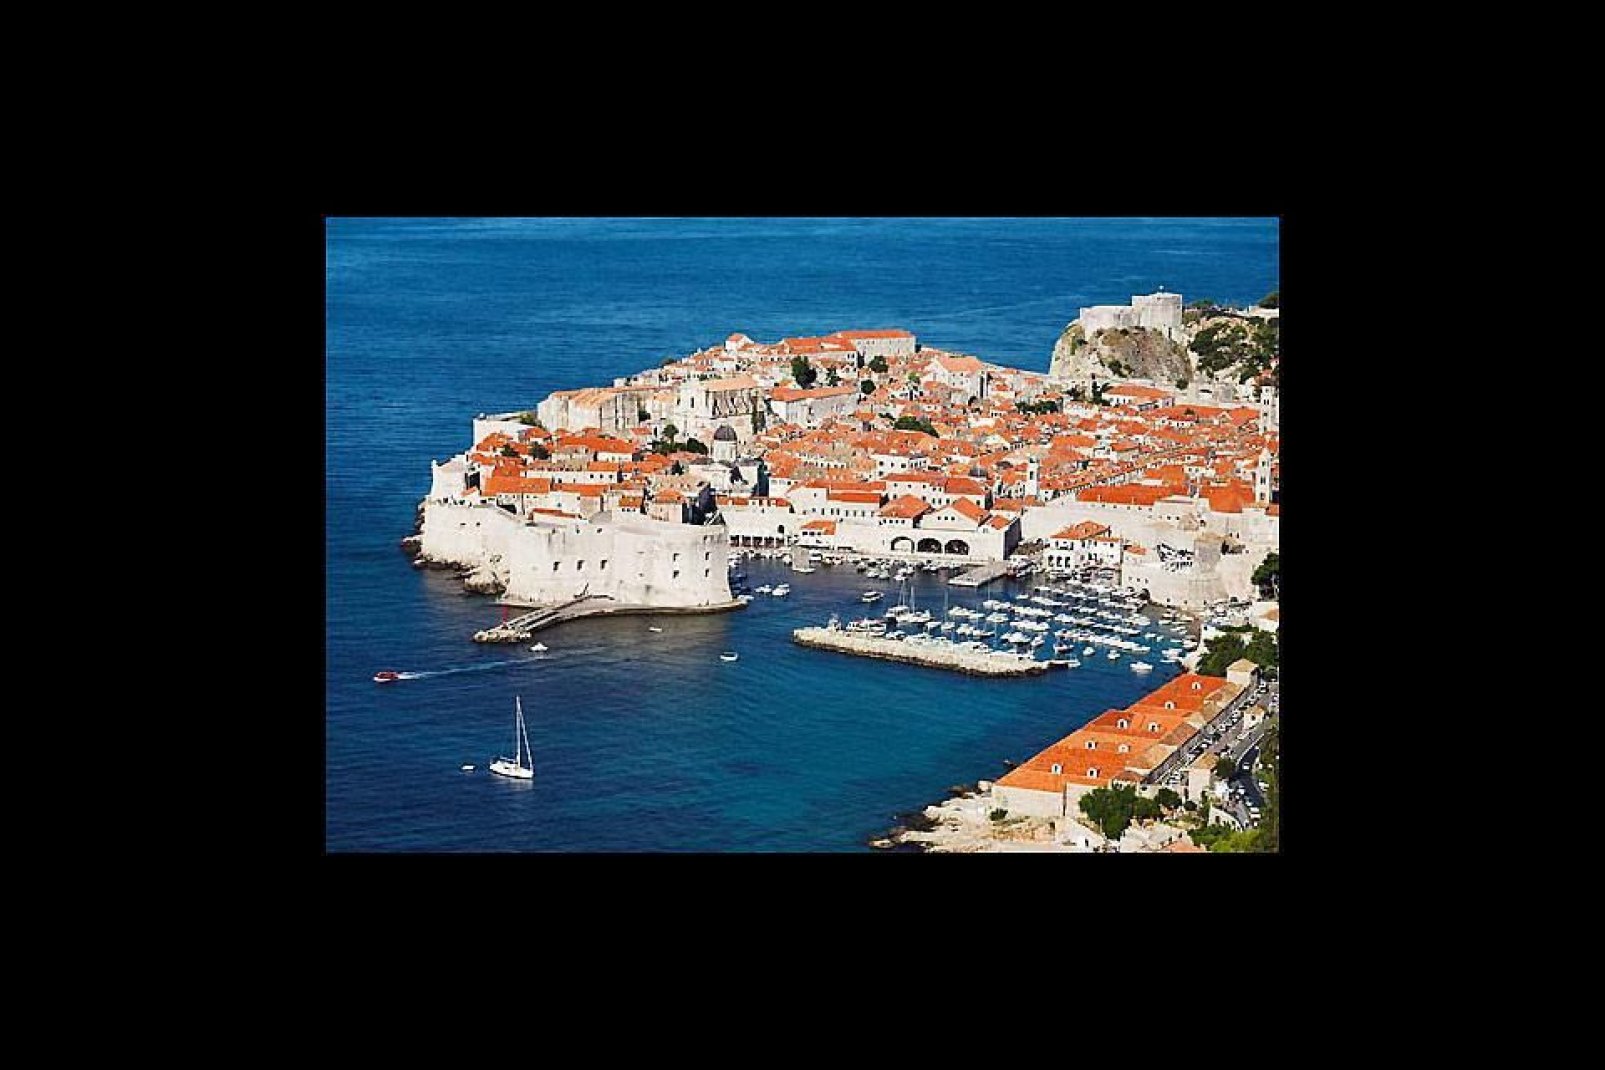 Il porto di Dubrovnik ospita una quantità notevole di barche, tra cui anche quelle di personaggi famosi